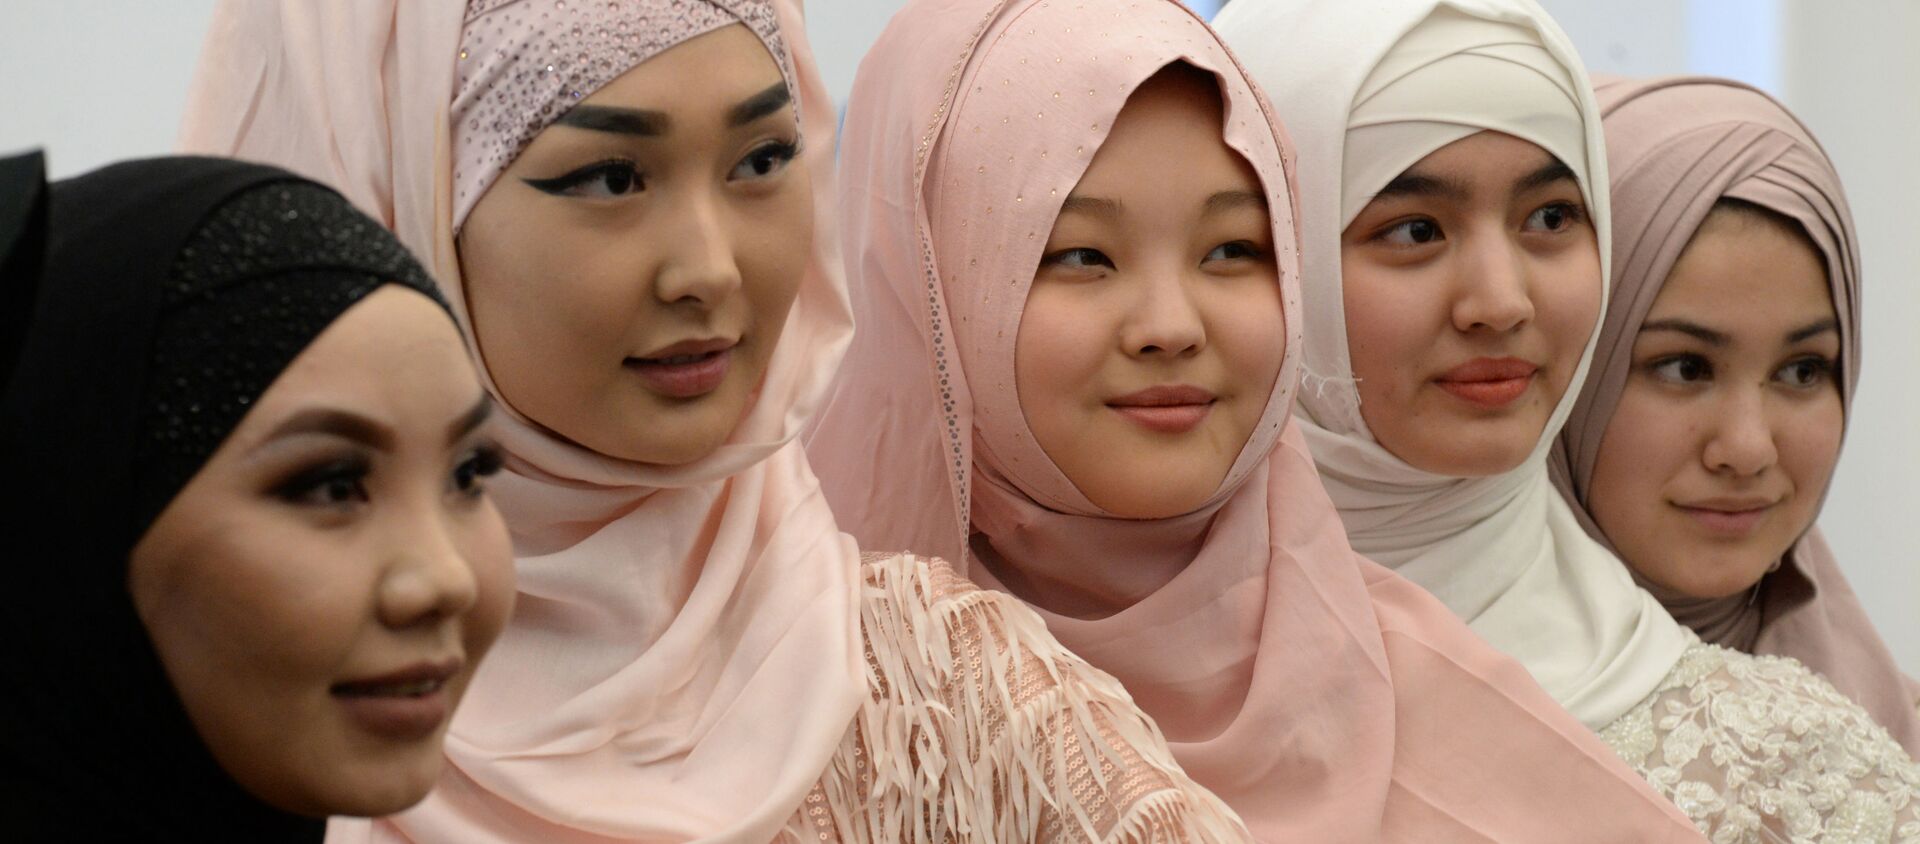 Девушки на праздновании Всемирного дня хиджаба в Бишкеке, Кыргызстан - Sputnik Латвия, 1920, 31.01.2021